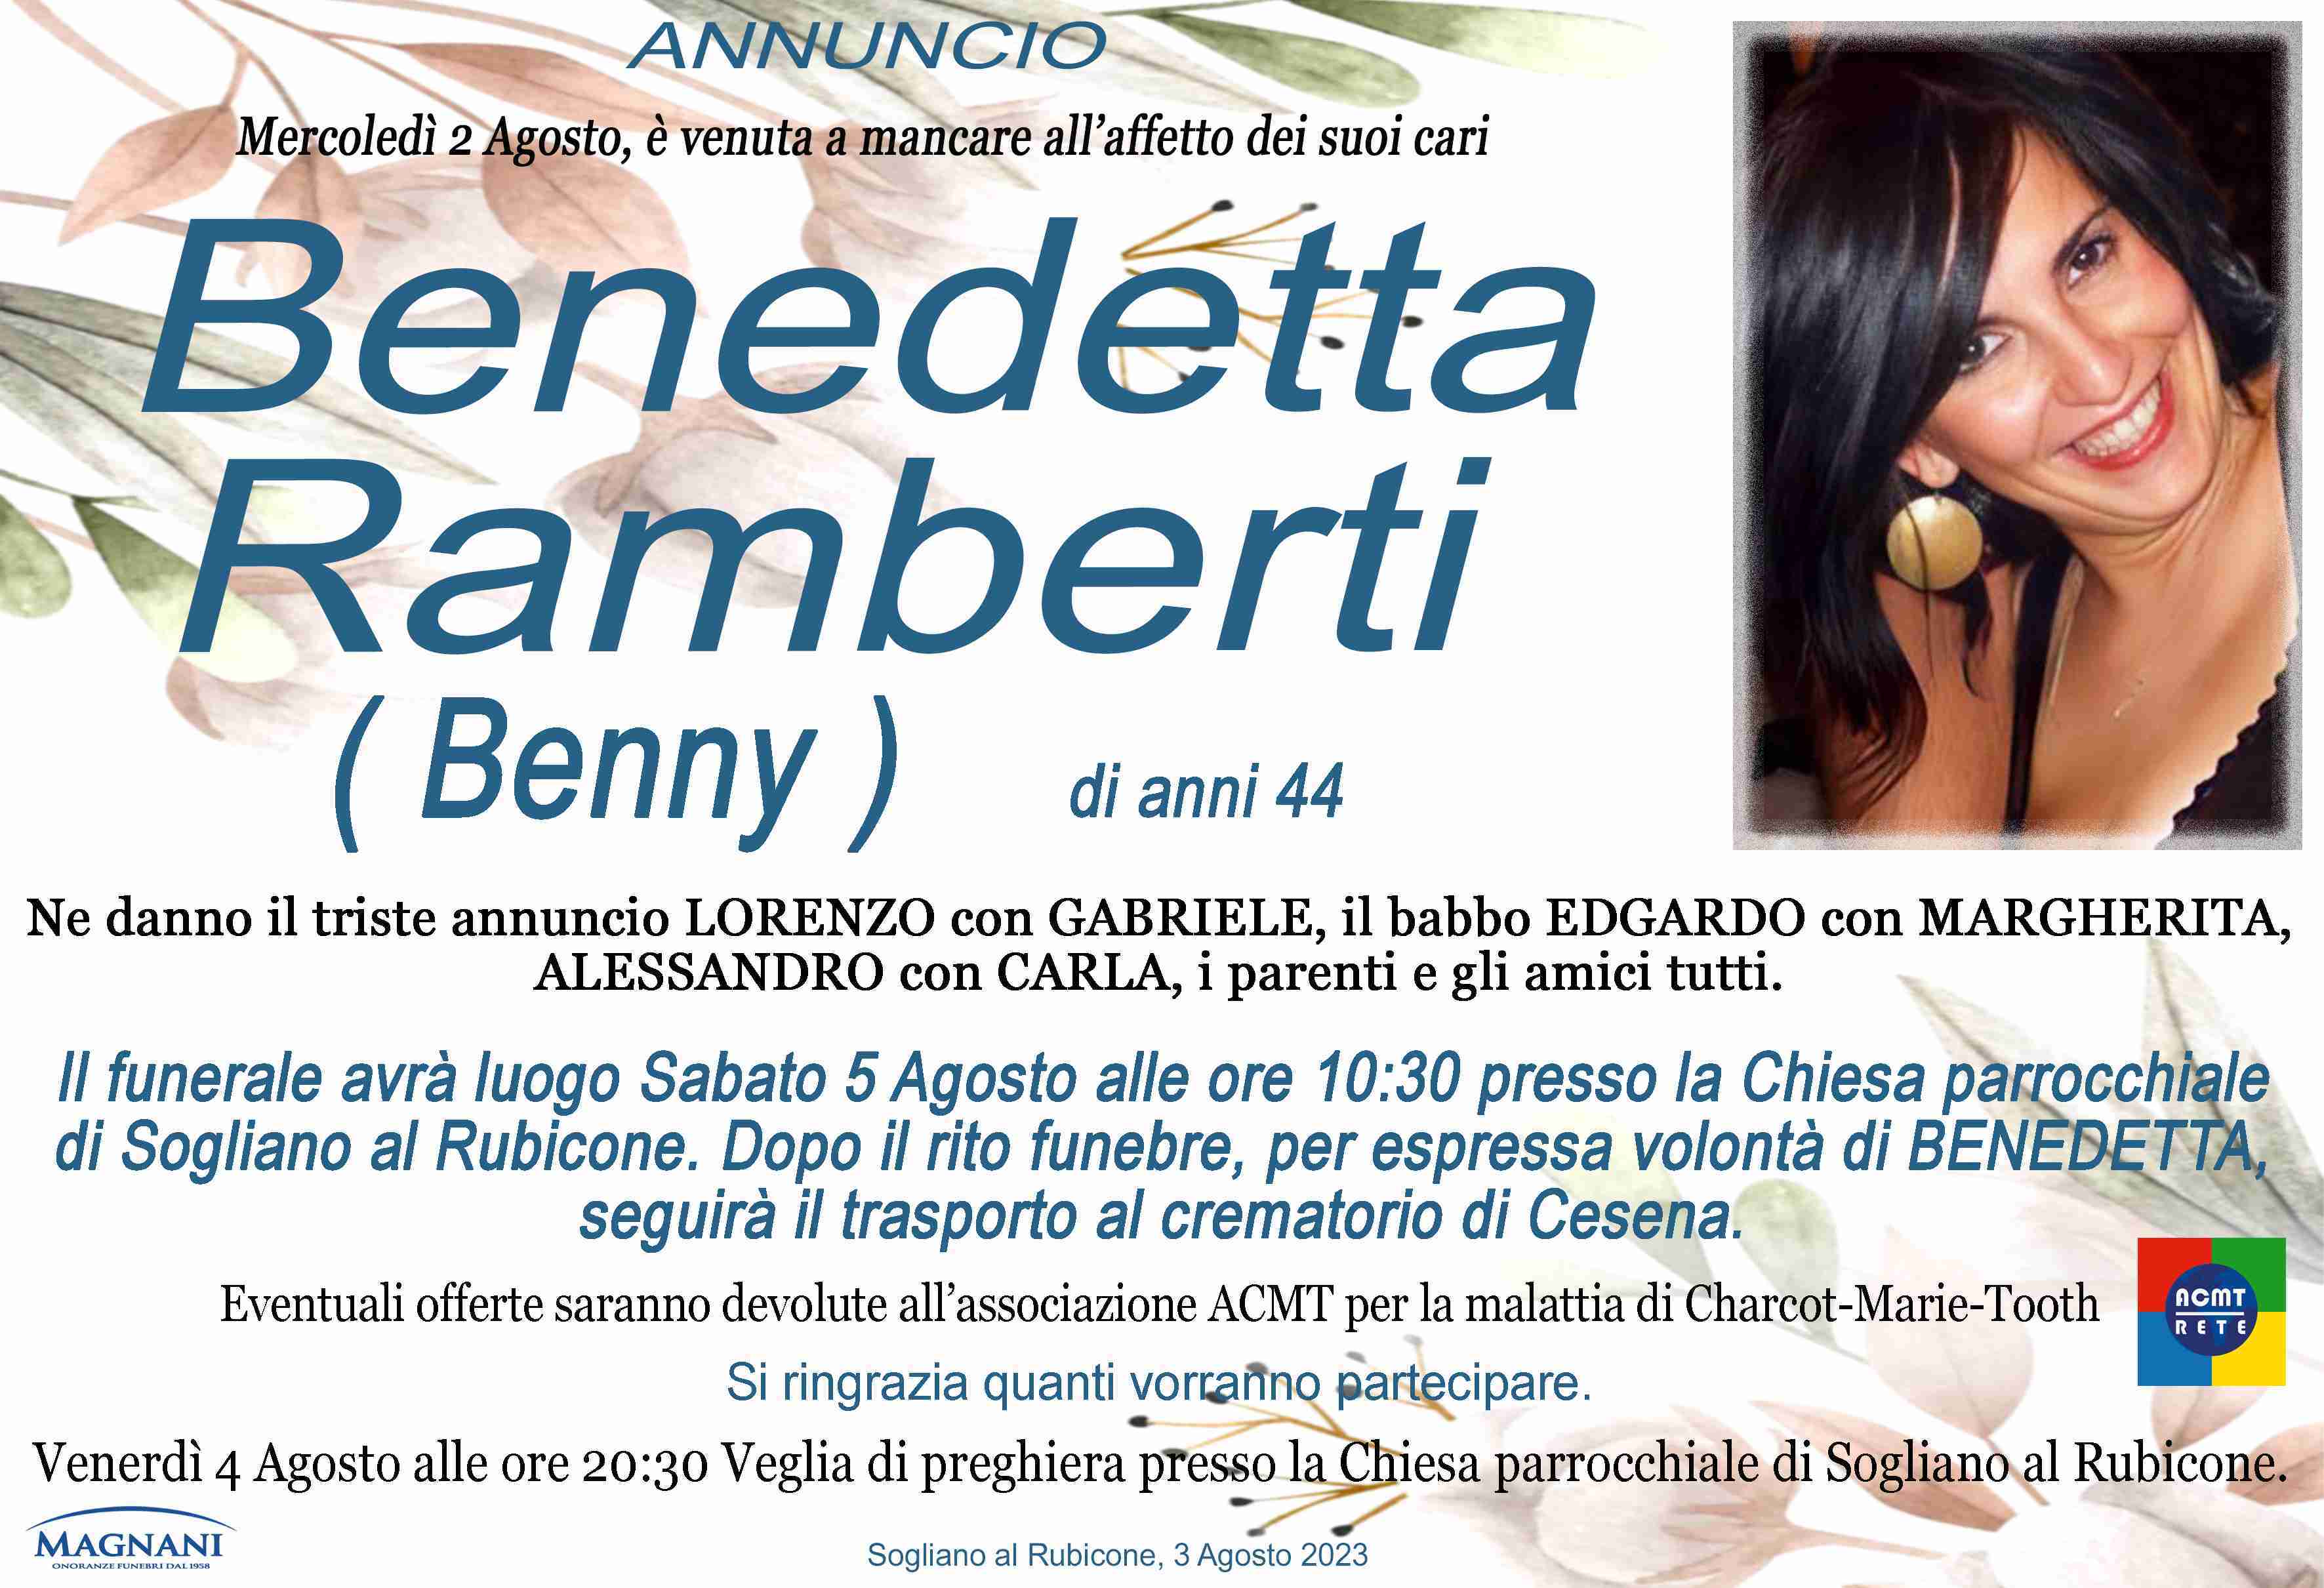 Benedetta Ramberti